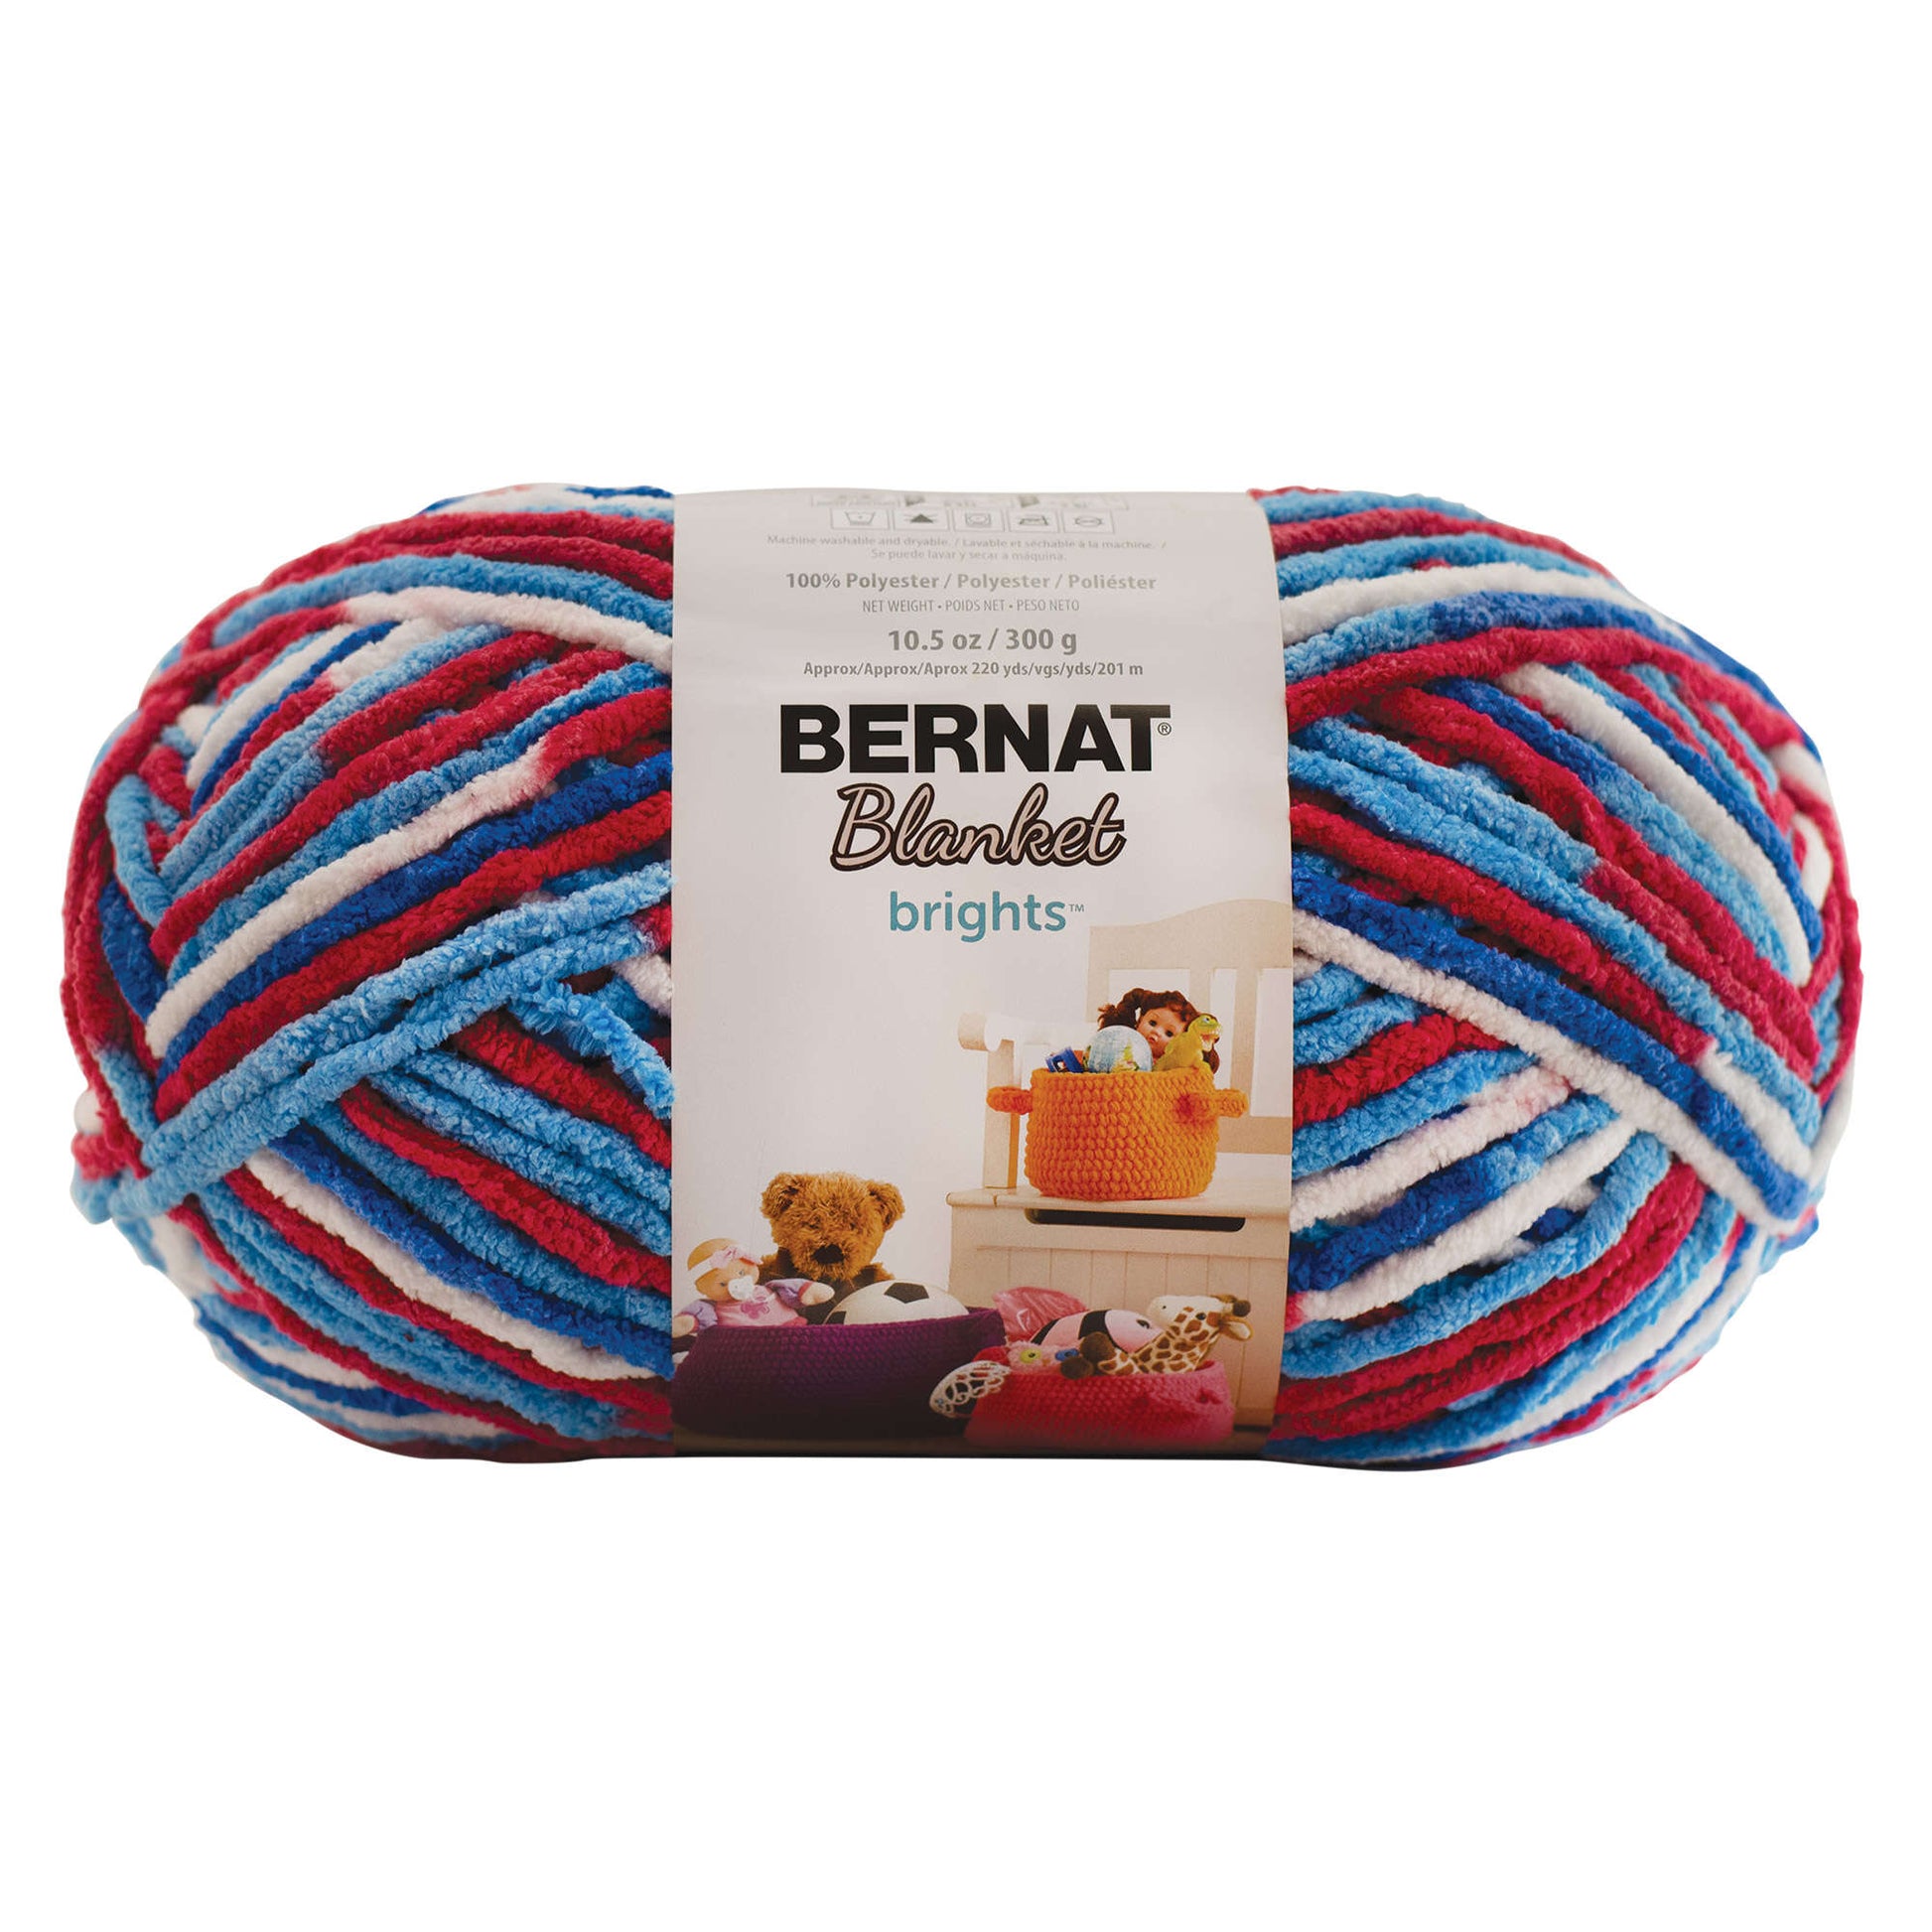 Bernat® Baby Blanket™ Yarn, Polyester #6 Super Bulky, 10.5oz/300g, 220  Yards, Soft, chenille-style baby yarn